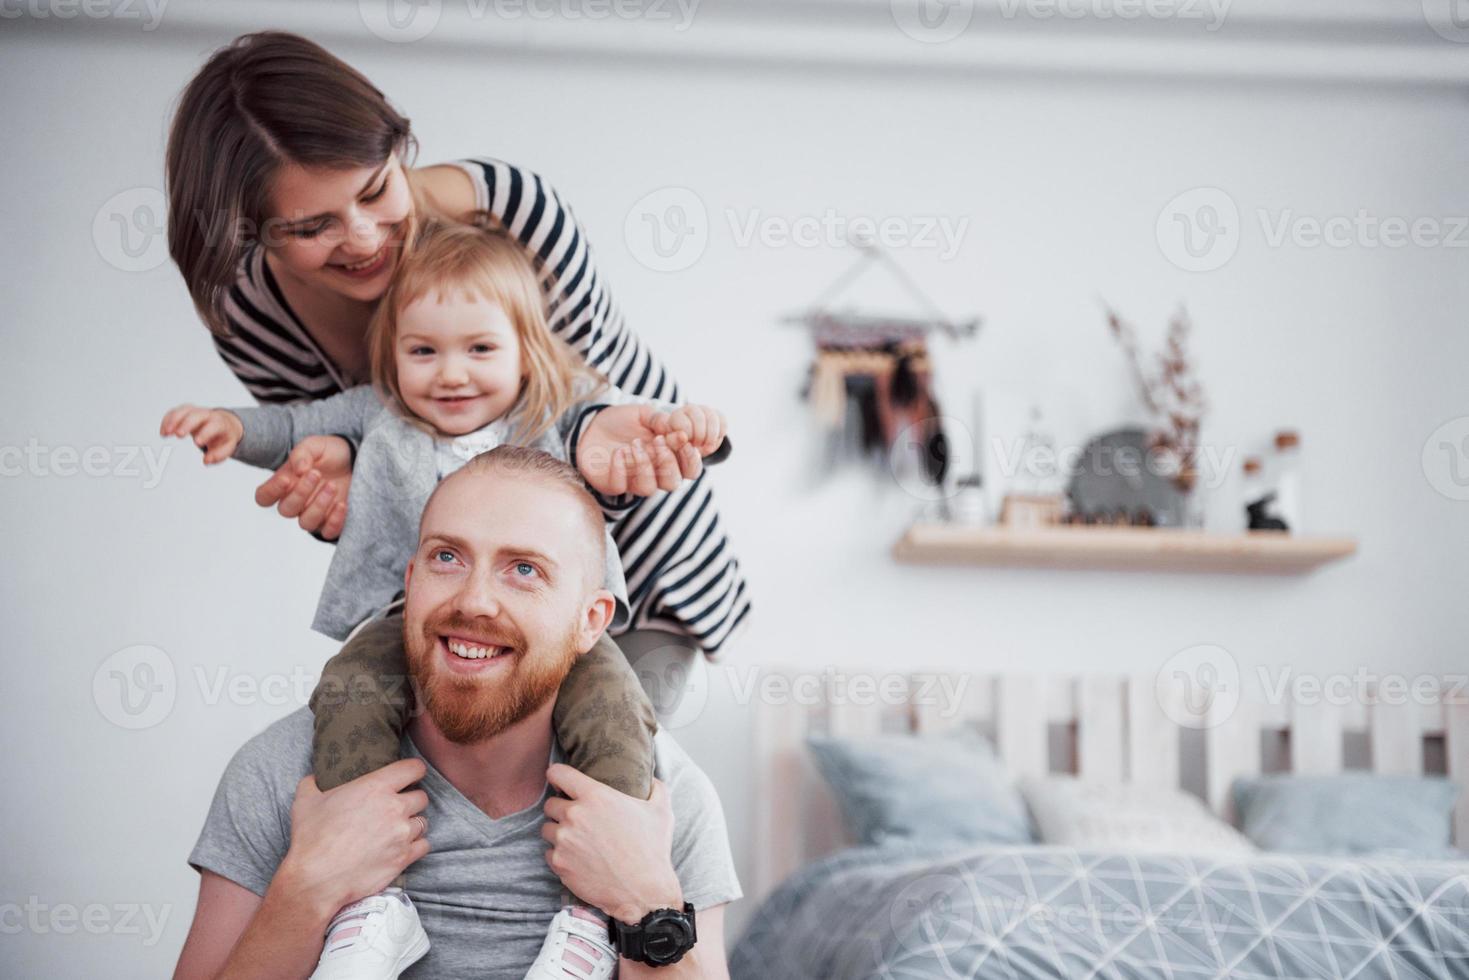 madre de familia feliz, padre, hija de niño en casa foto